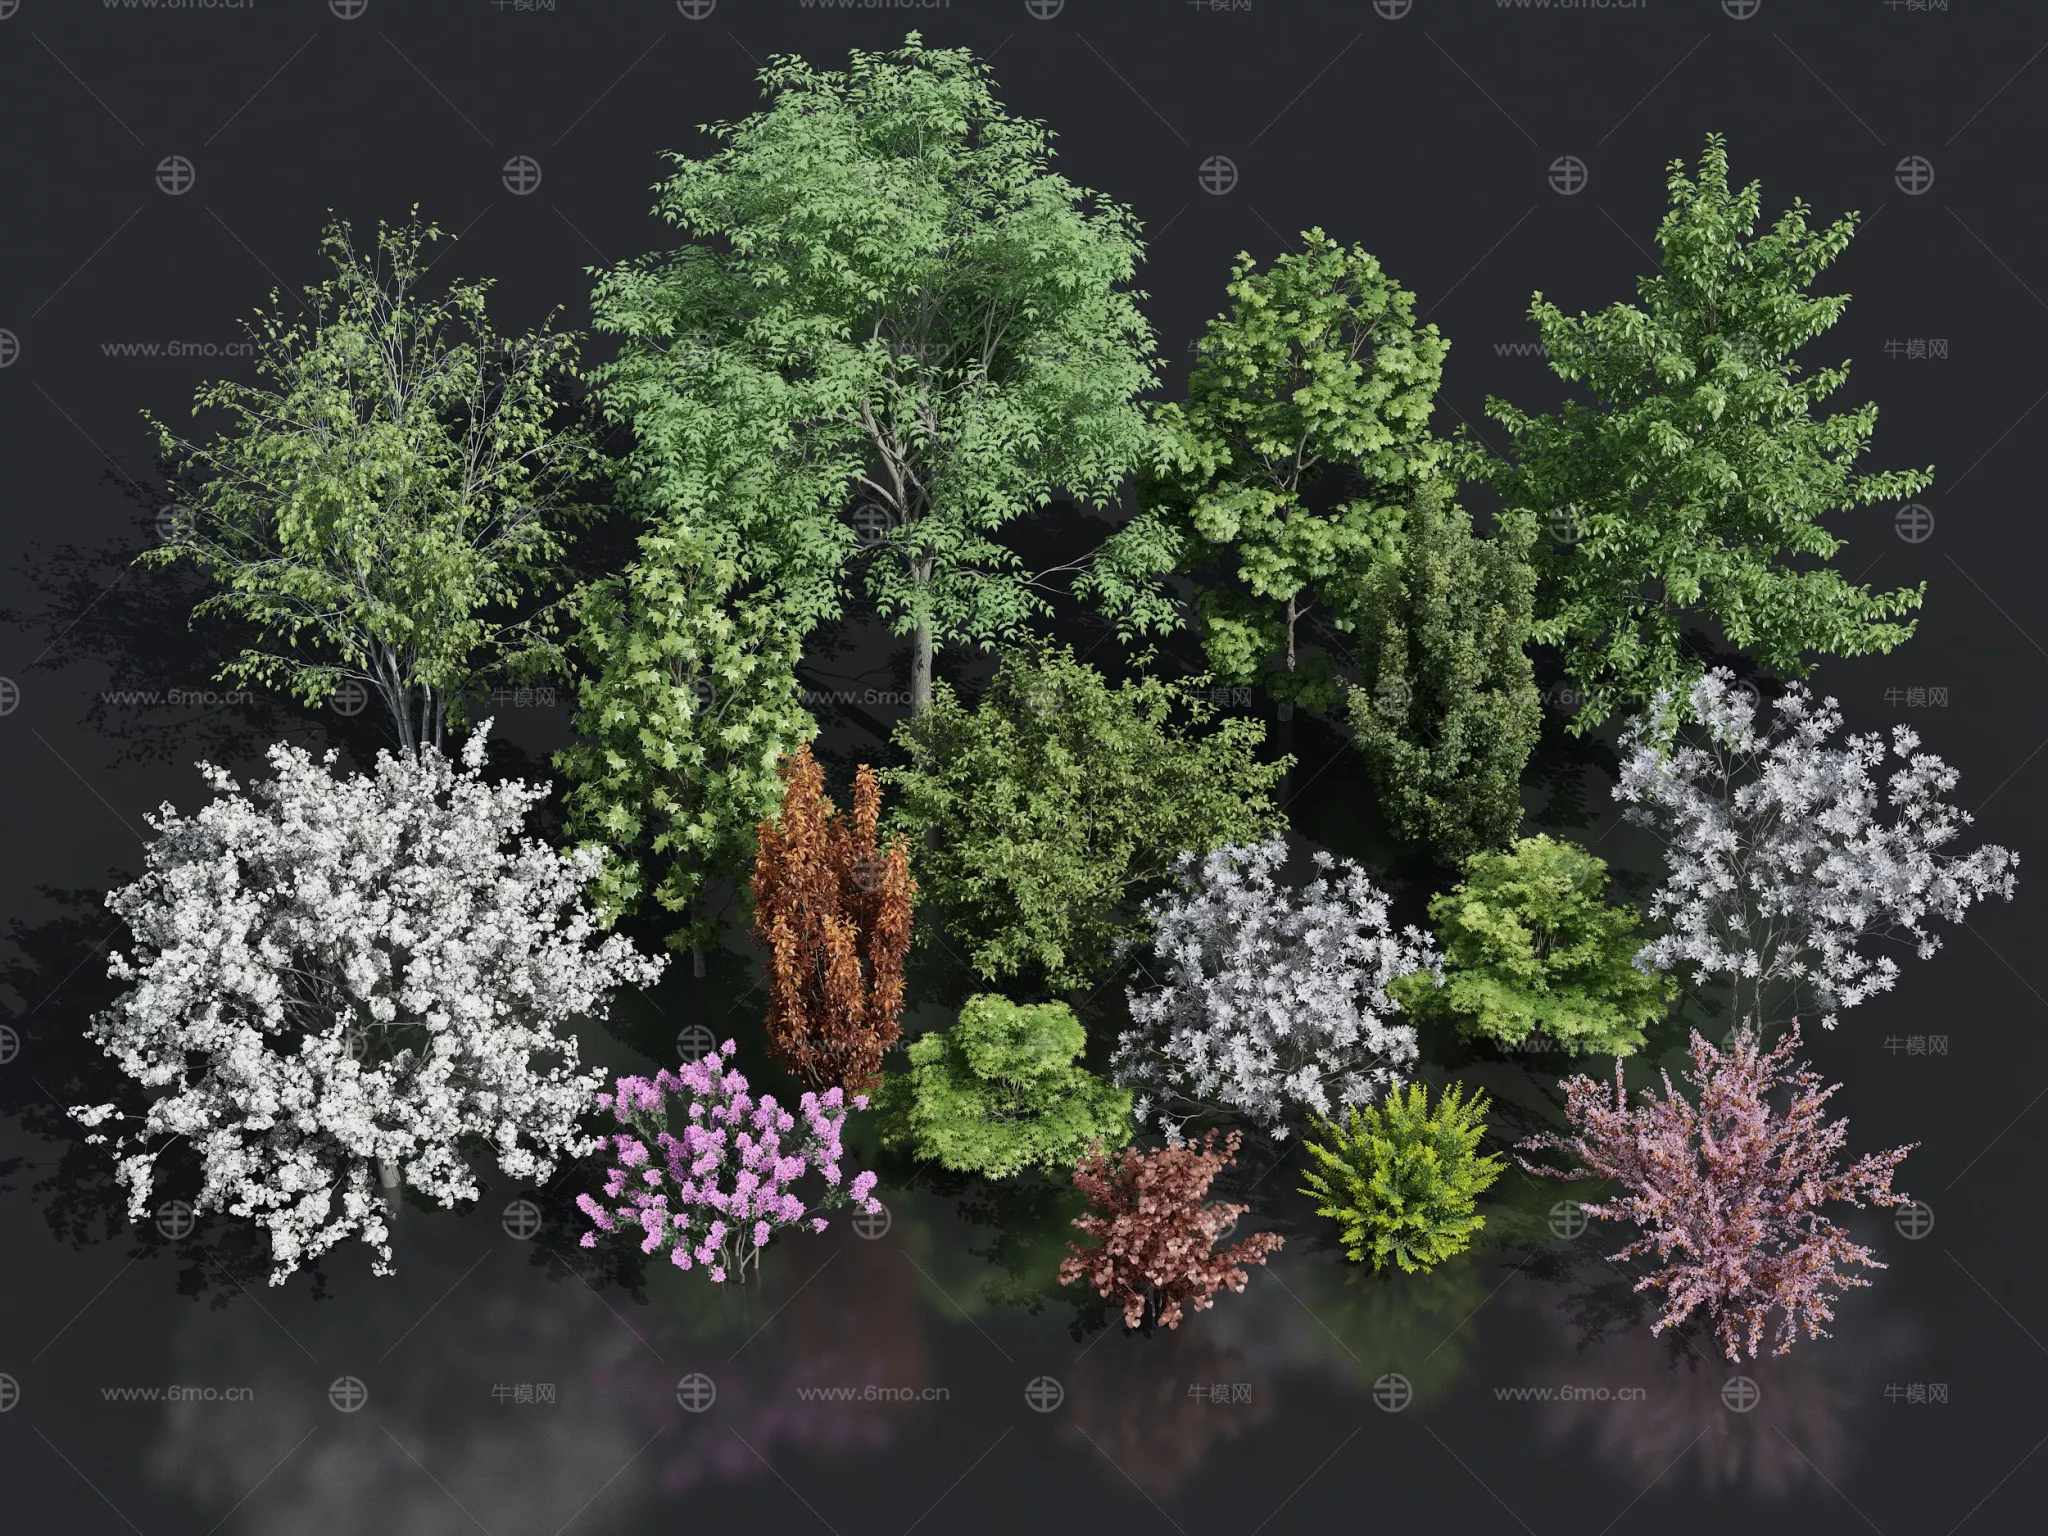 MODERN TREE - SKETCHUP 3D MODEL - ENSCAPE - 278739